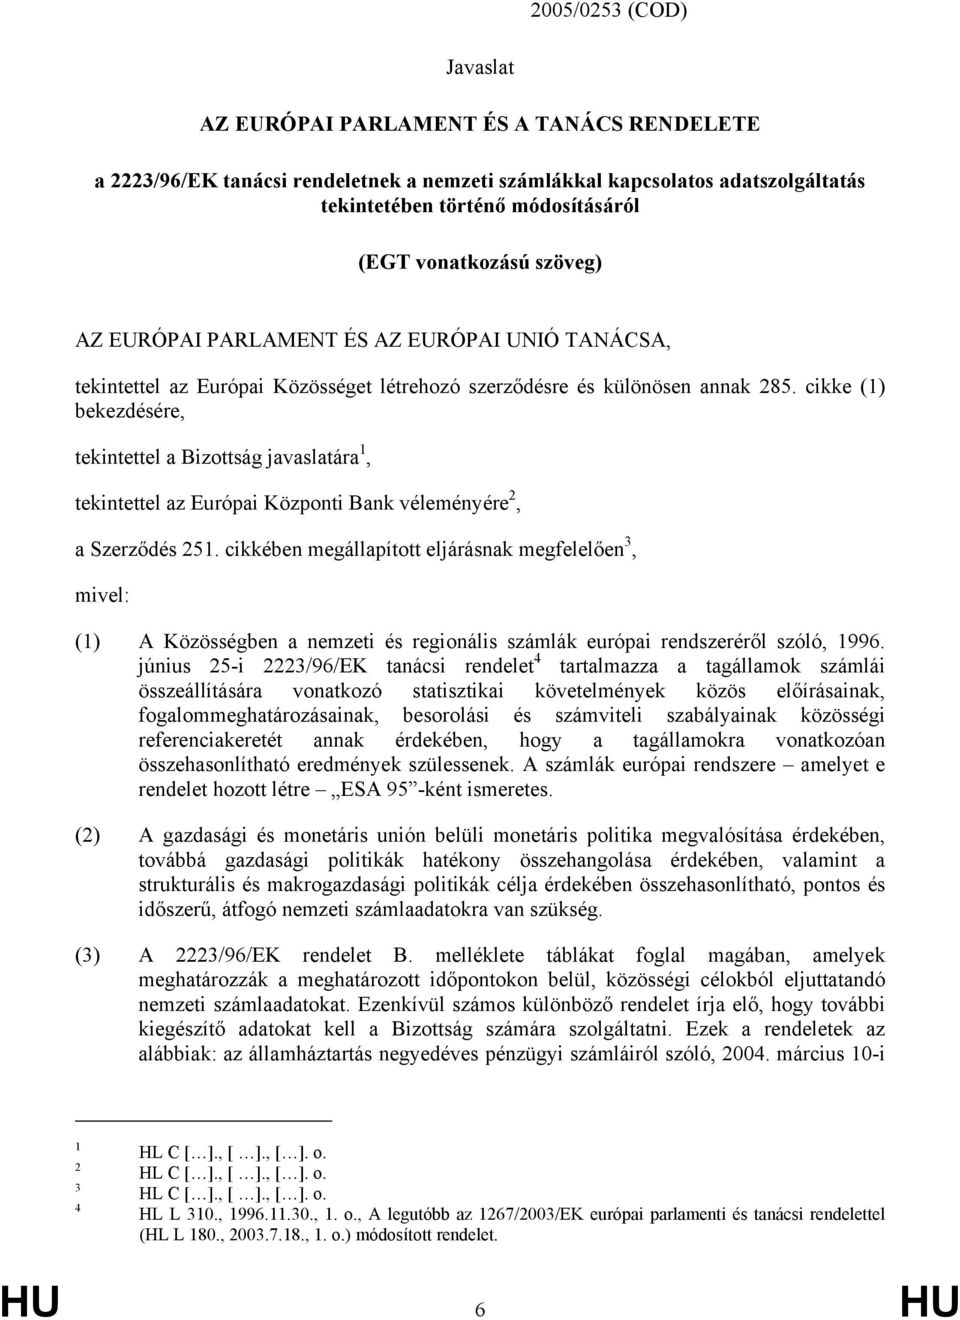 cikke (1) bekezdésére, tekintettel a Bizottság javaslatára 1, tekintettel az Európai Központi Bank véleményére 2, a Szerződés 251.